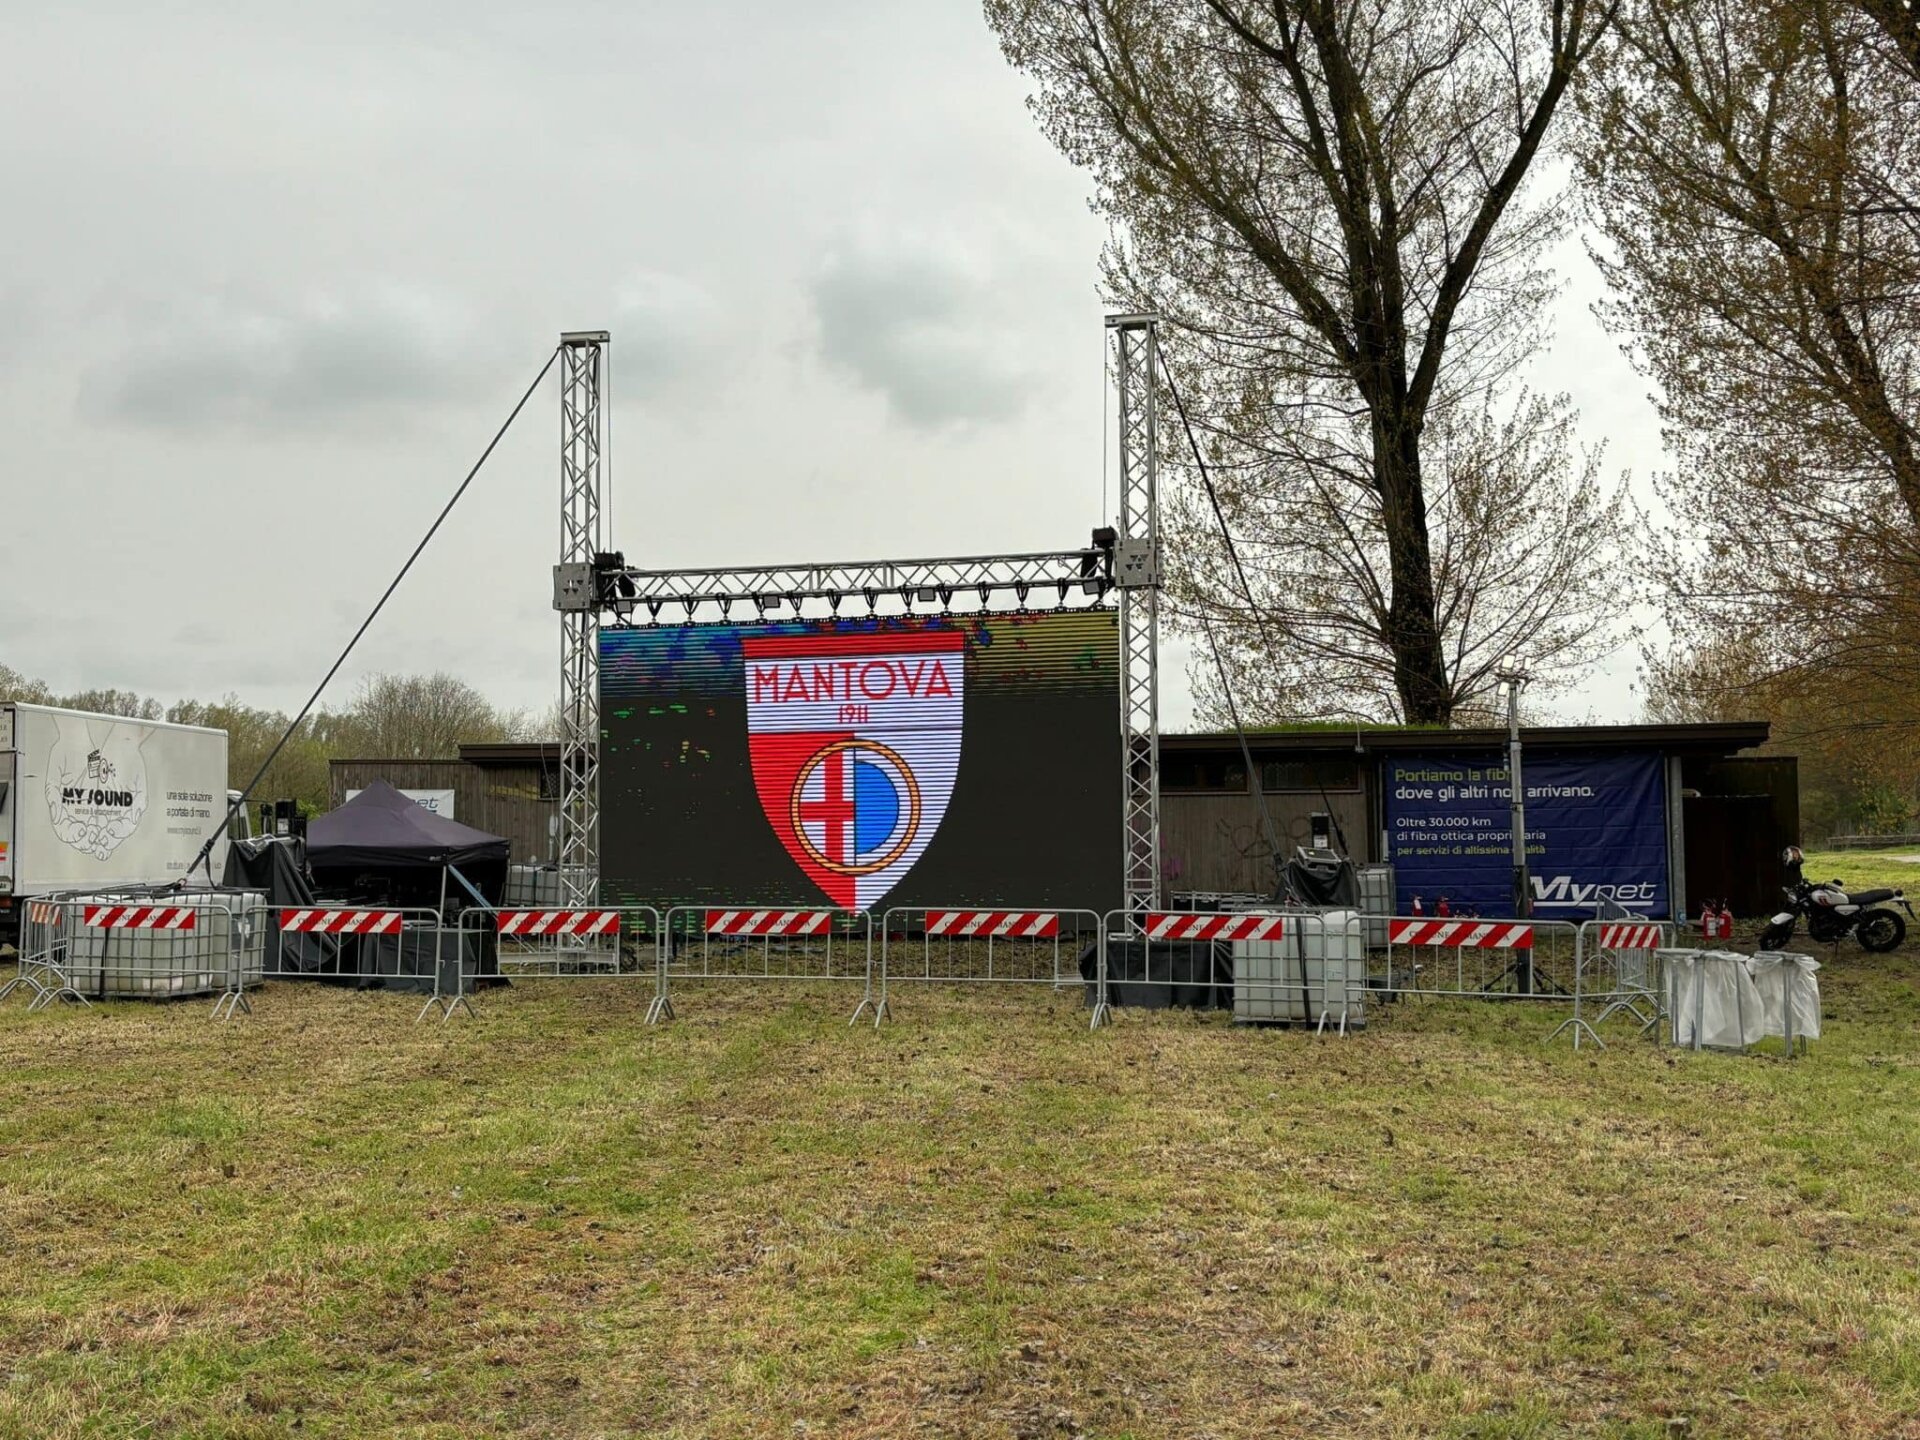 Il maxischermo che era stato installato la vigilia di Pasqua a Campo Canoa per la partita del Mantova (foto dal profilo Facebook del sindaco Mattia Palazzi)